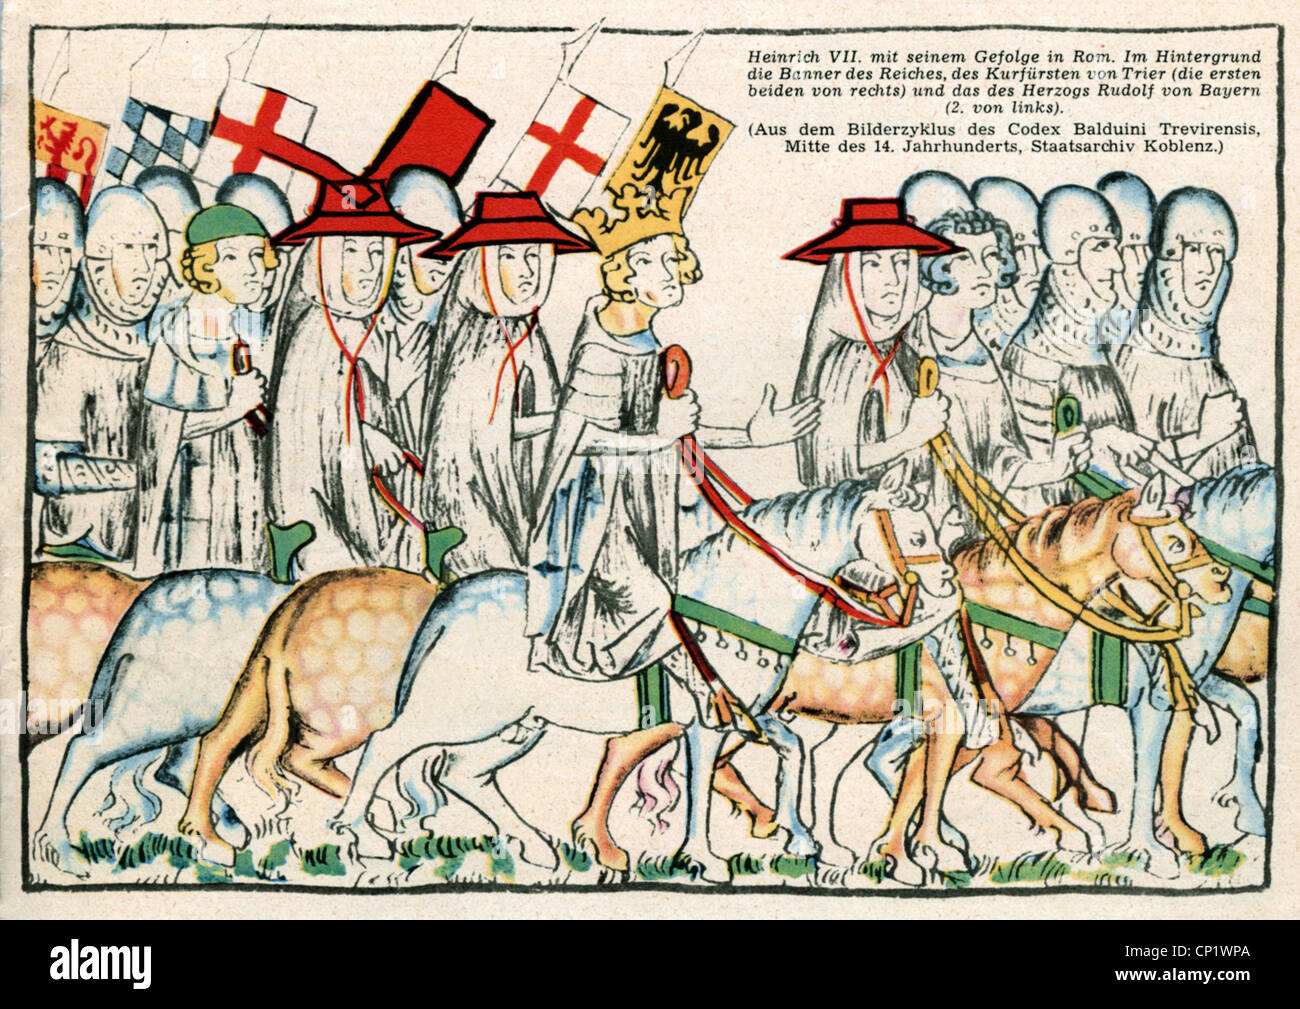 Enrico VII, circa 1275 - 24.8.1313, Sacro Romano Imperatore 1312 - 1313, scena, Enrico VII con il suo entourage a Roma, illustrazione dal 'Codex Balduini Trevirensis', metà 14th secolo, Foto Stock